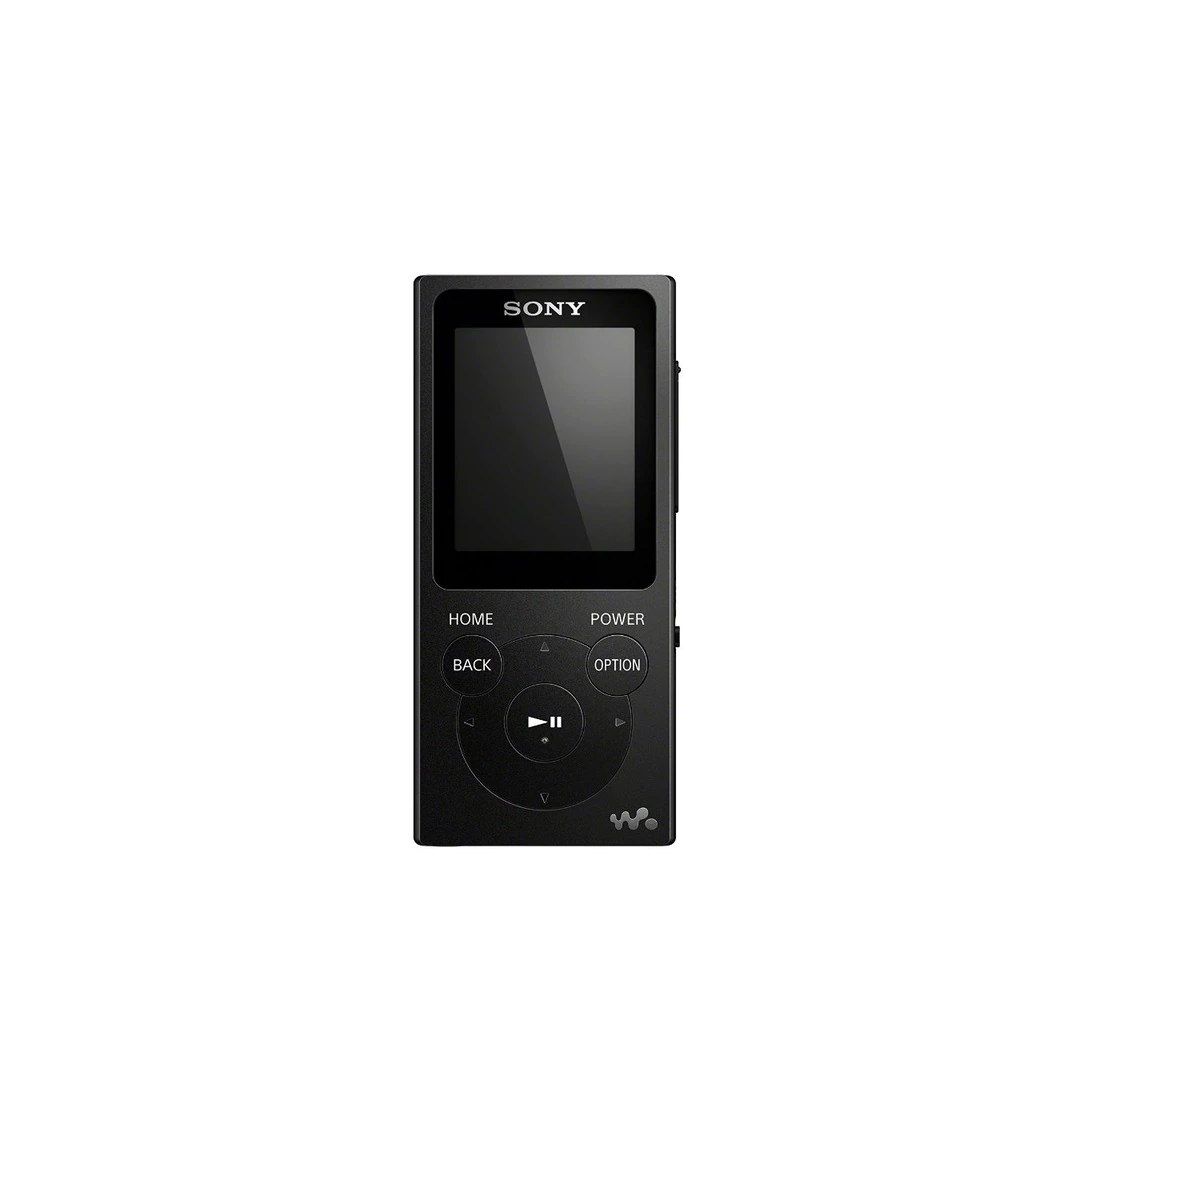 Reproductor MP4 Sony NW-E394 Negro de 8 GB con radio FM